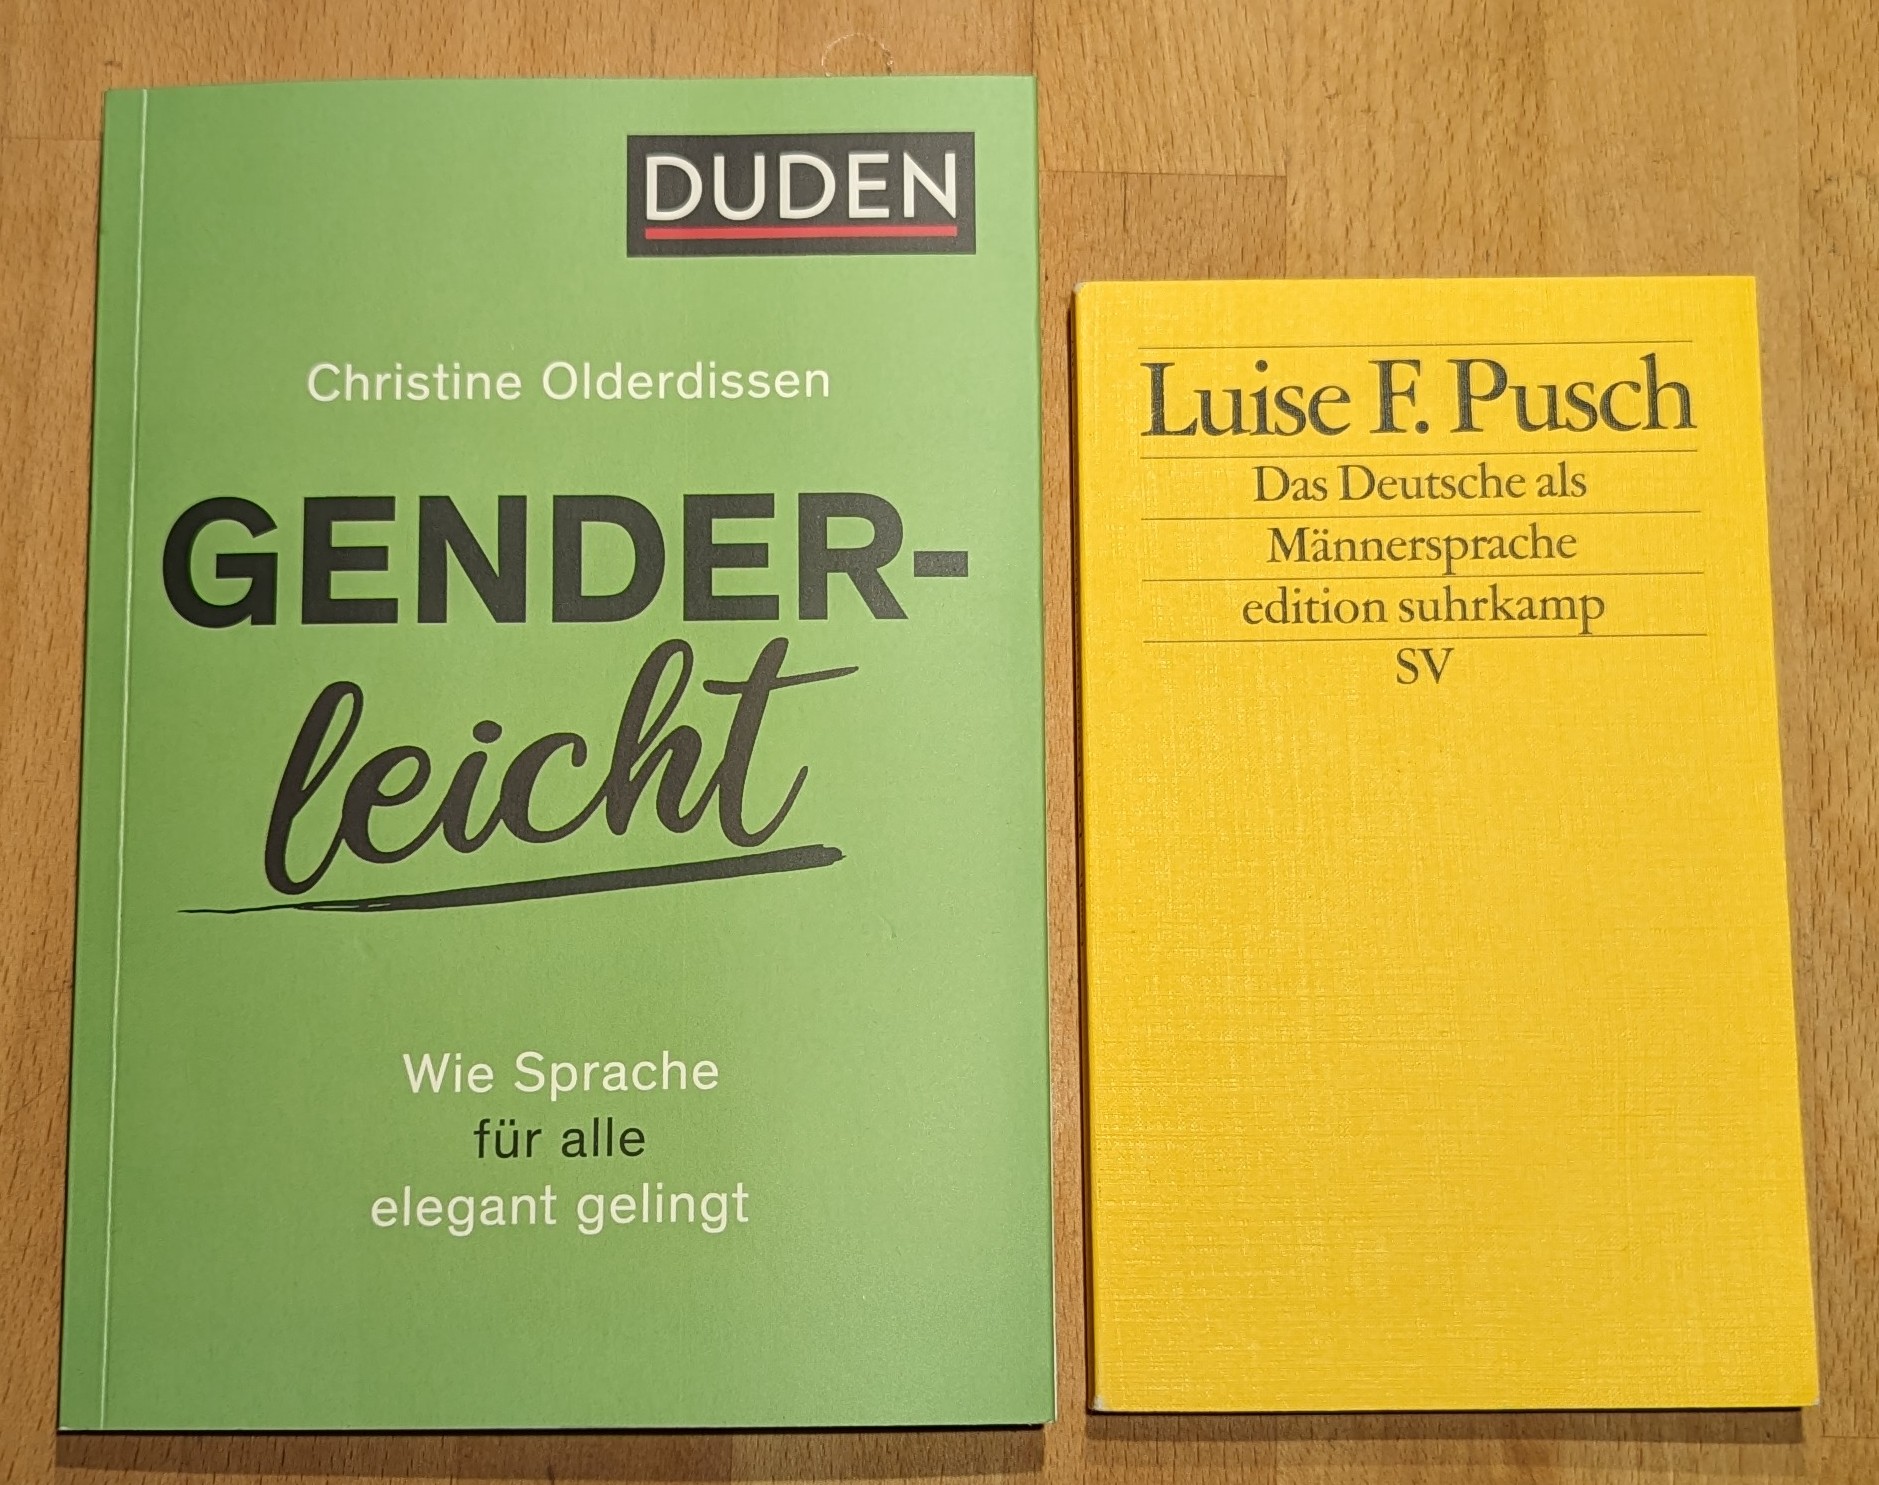 Zwei Buchcoer. Links das Buch Genderleicht aus dem DUDEN-Verlag von Christine Olderdissen. Rechts das Buch "Das Deutsch als Männersprache" von Luise Pusch.